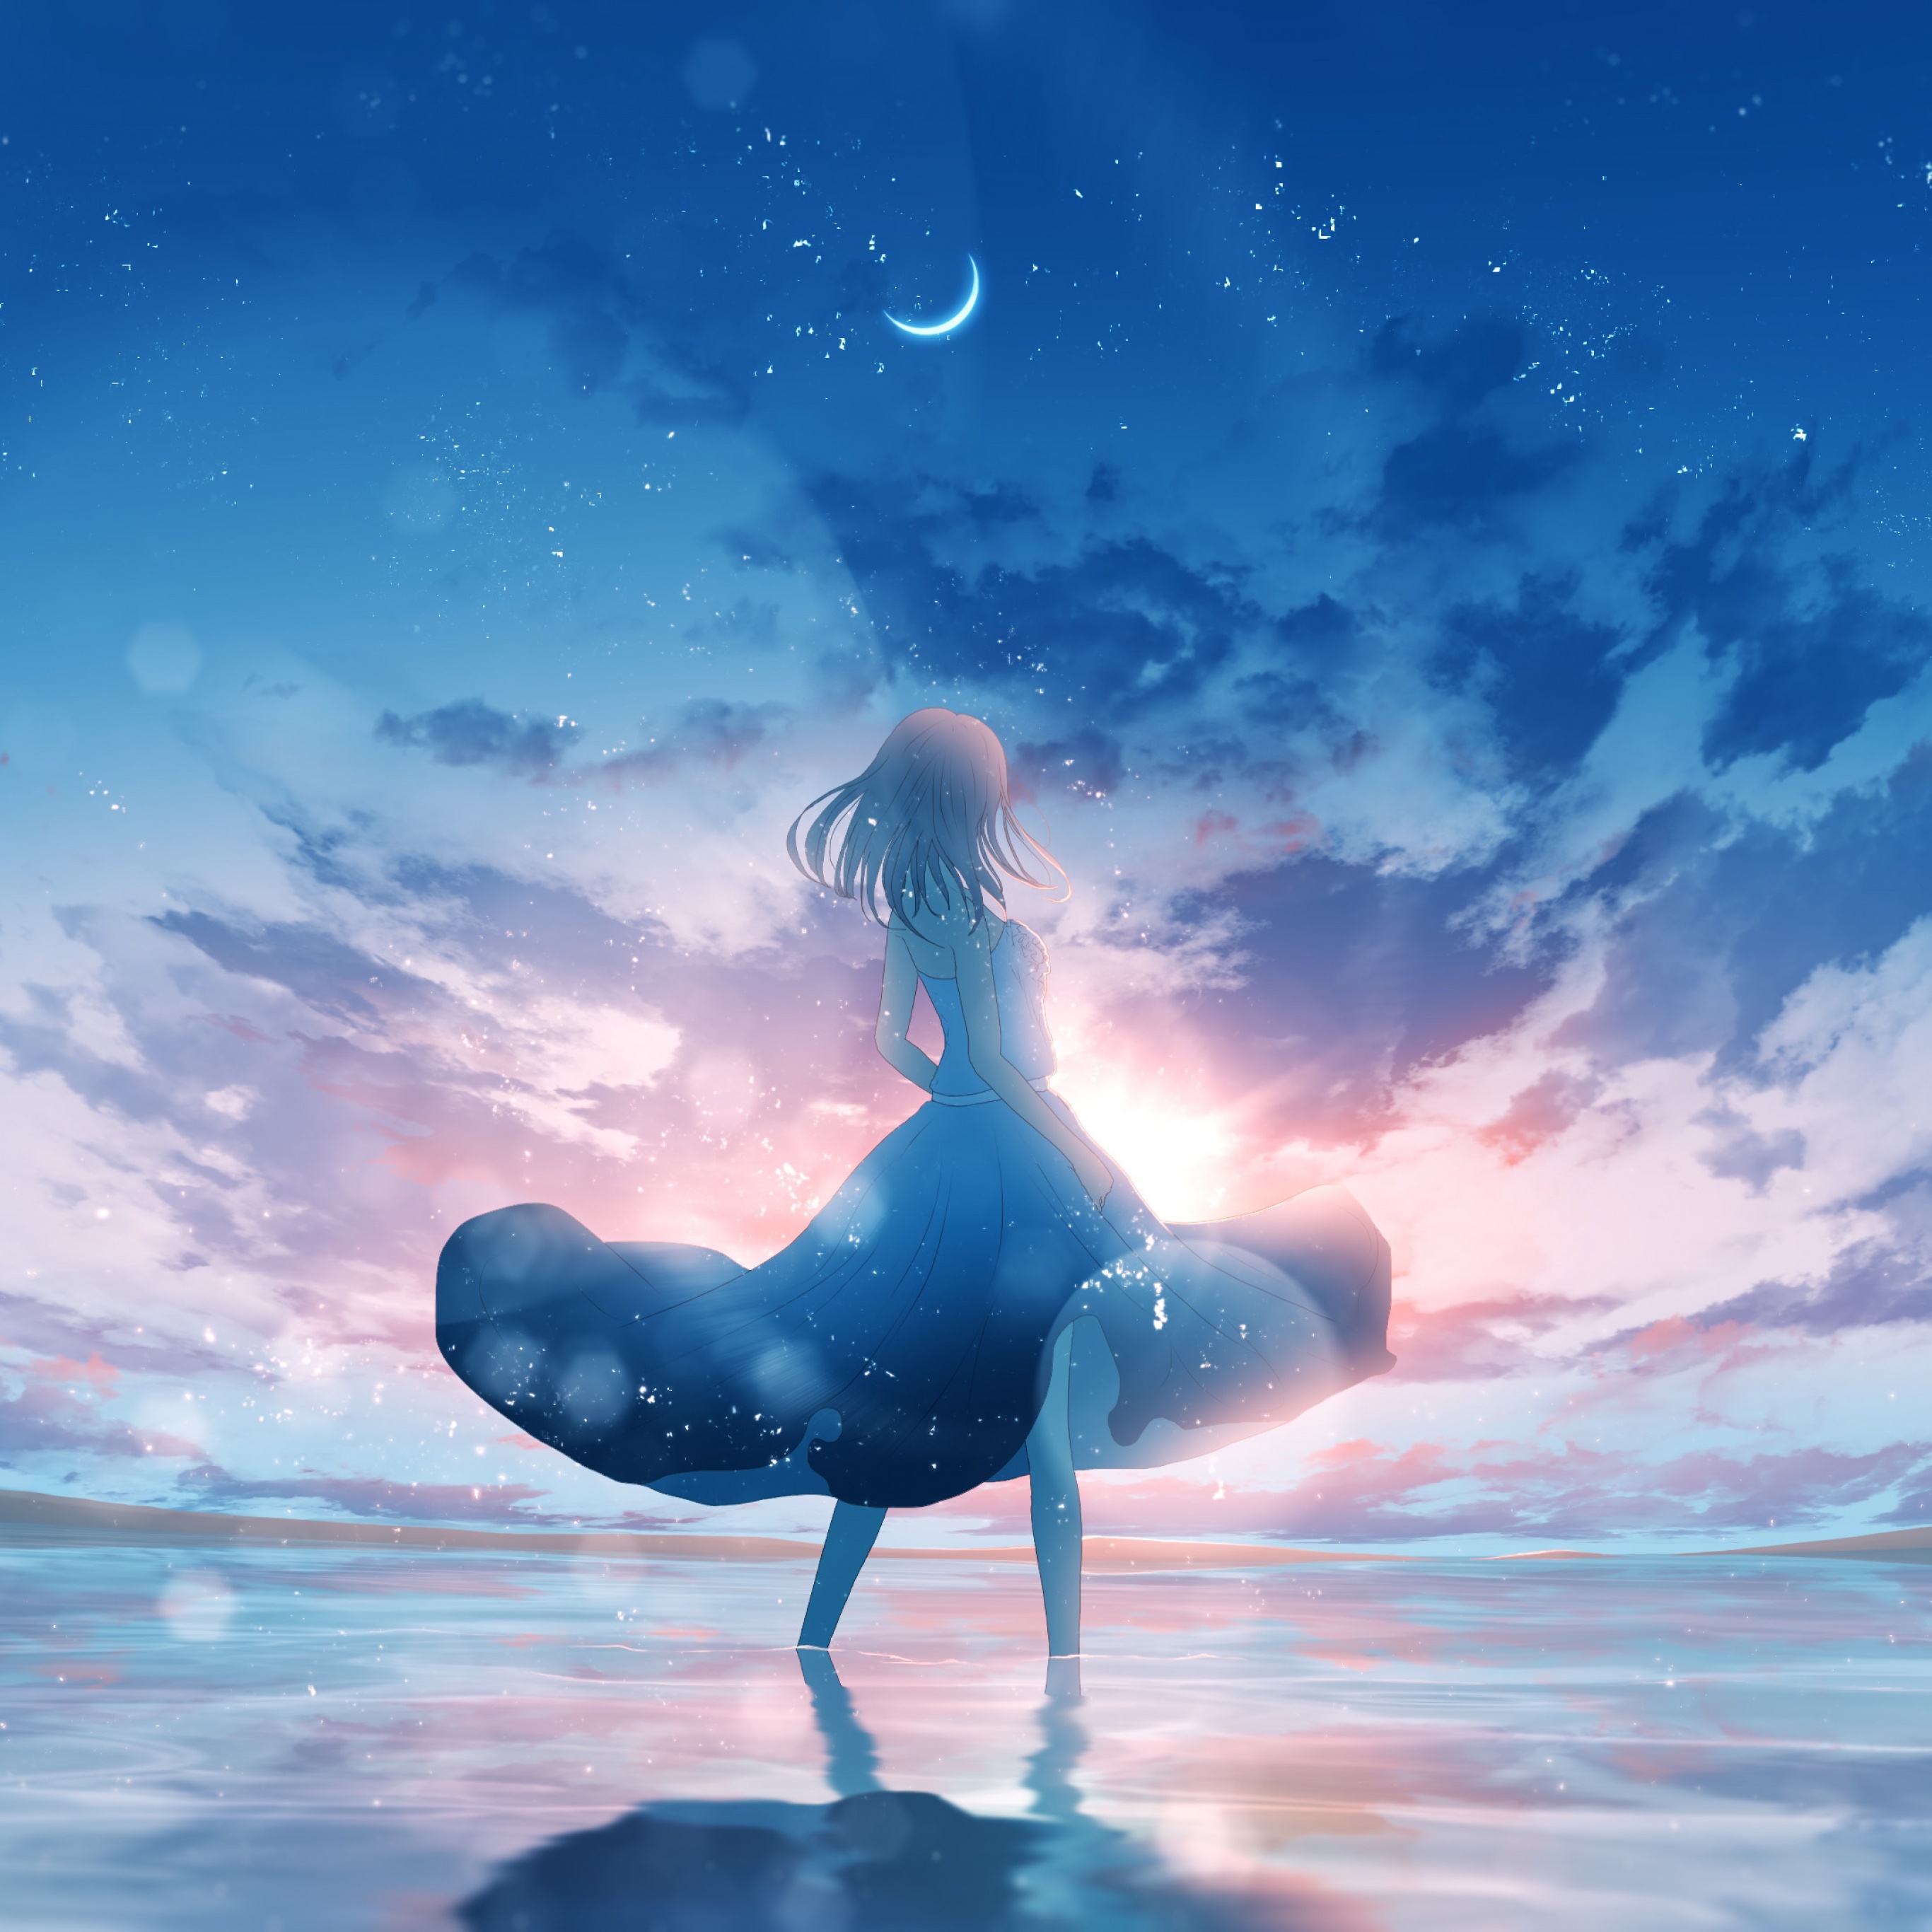 Anime girl Wallpaper 4K, Dream, Happy girl, Moon, Fantasy, #8360